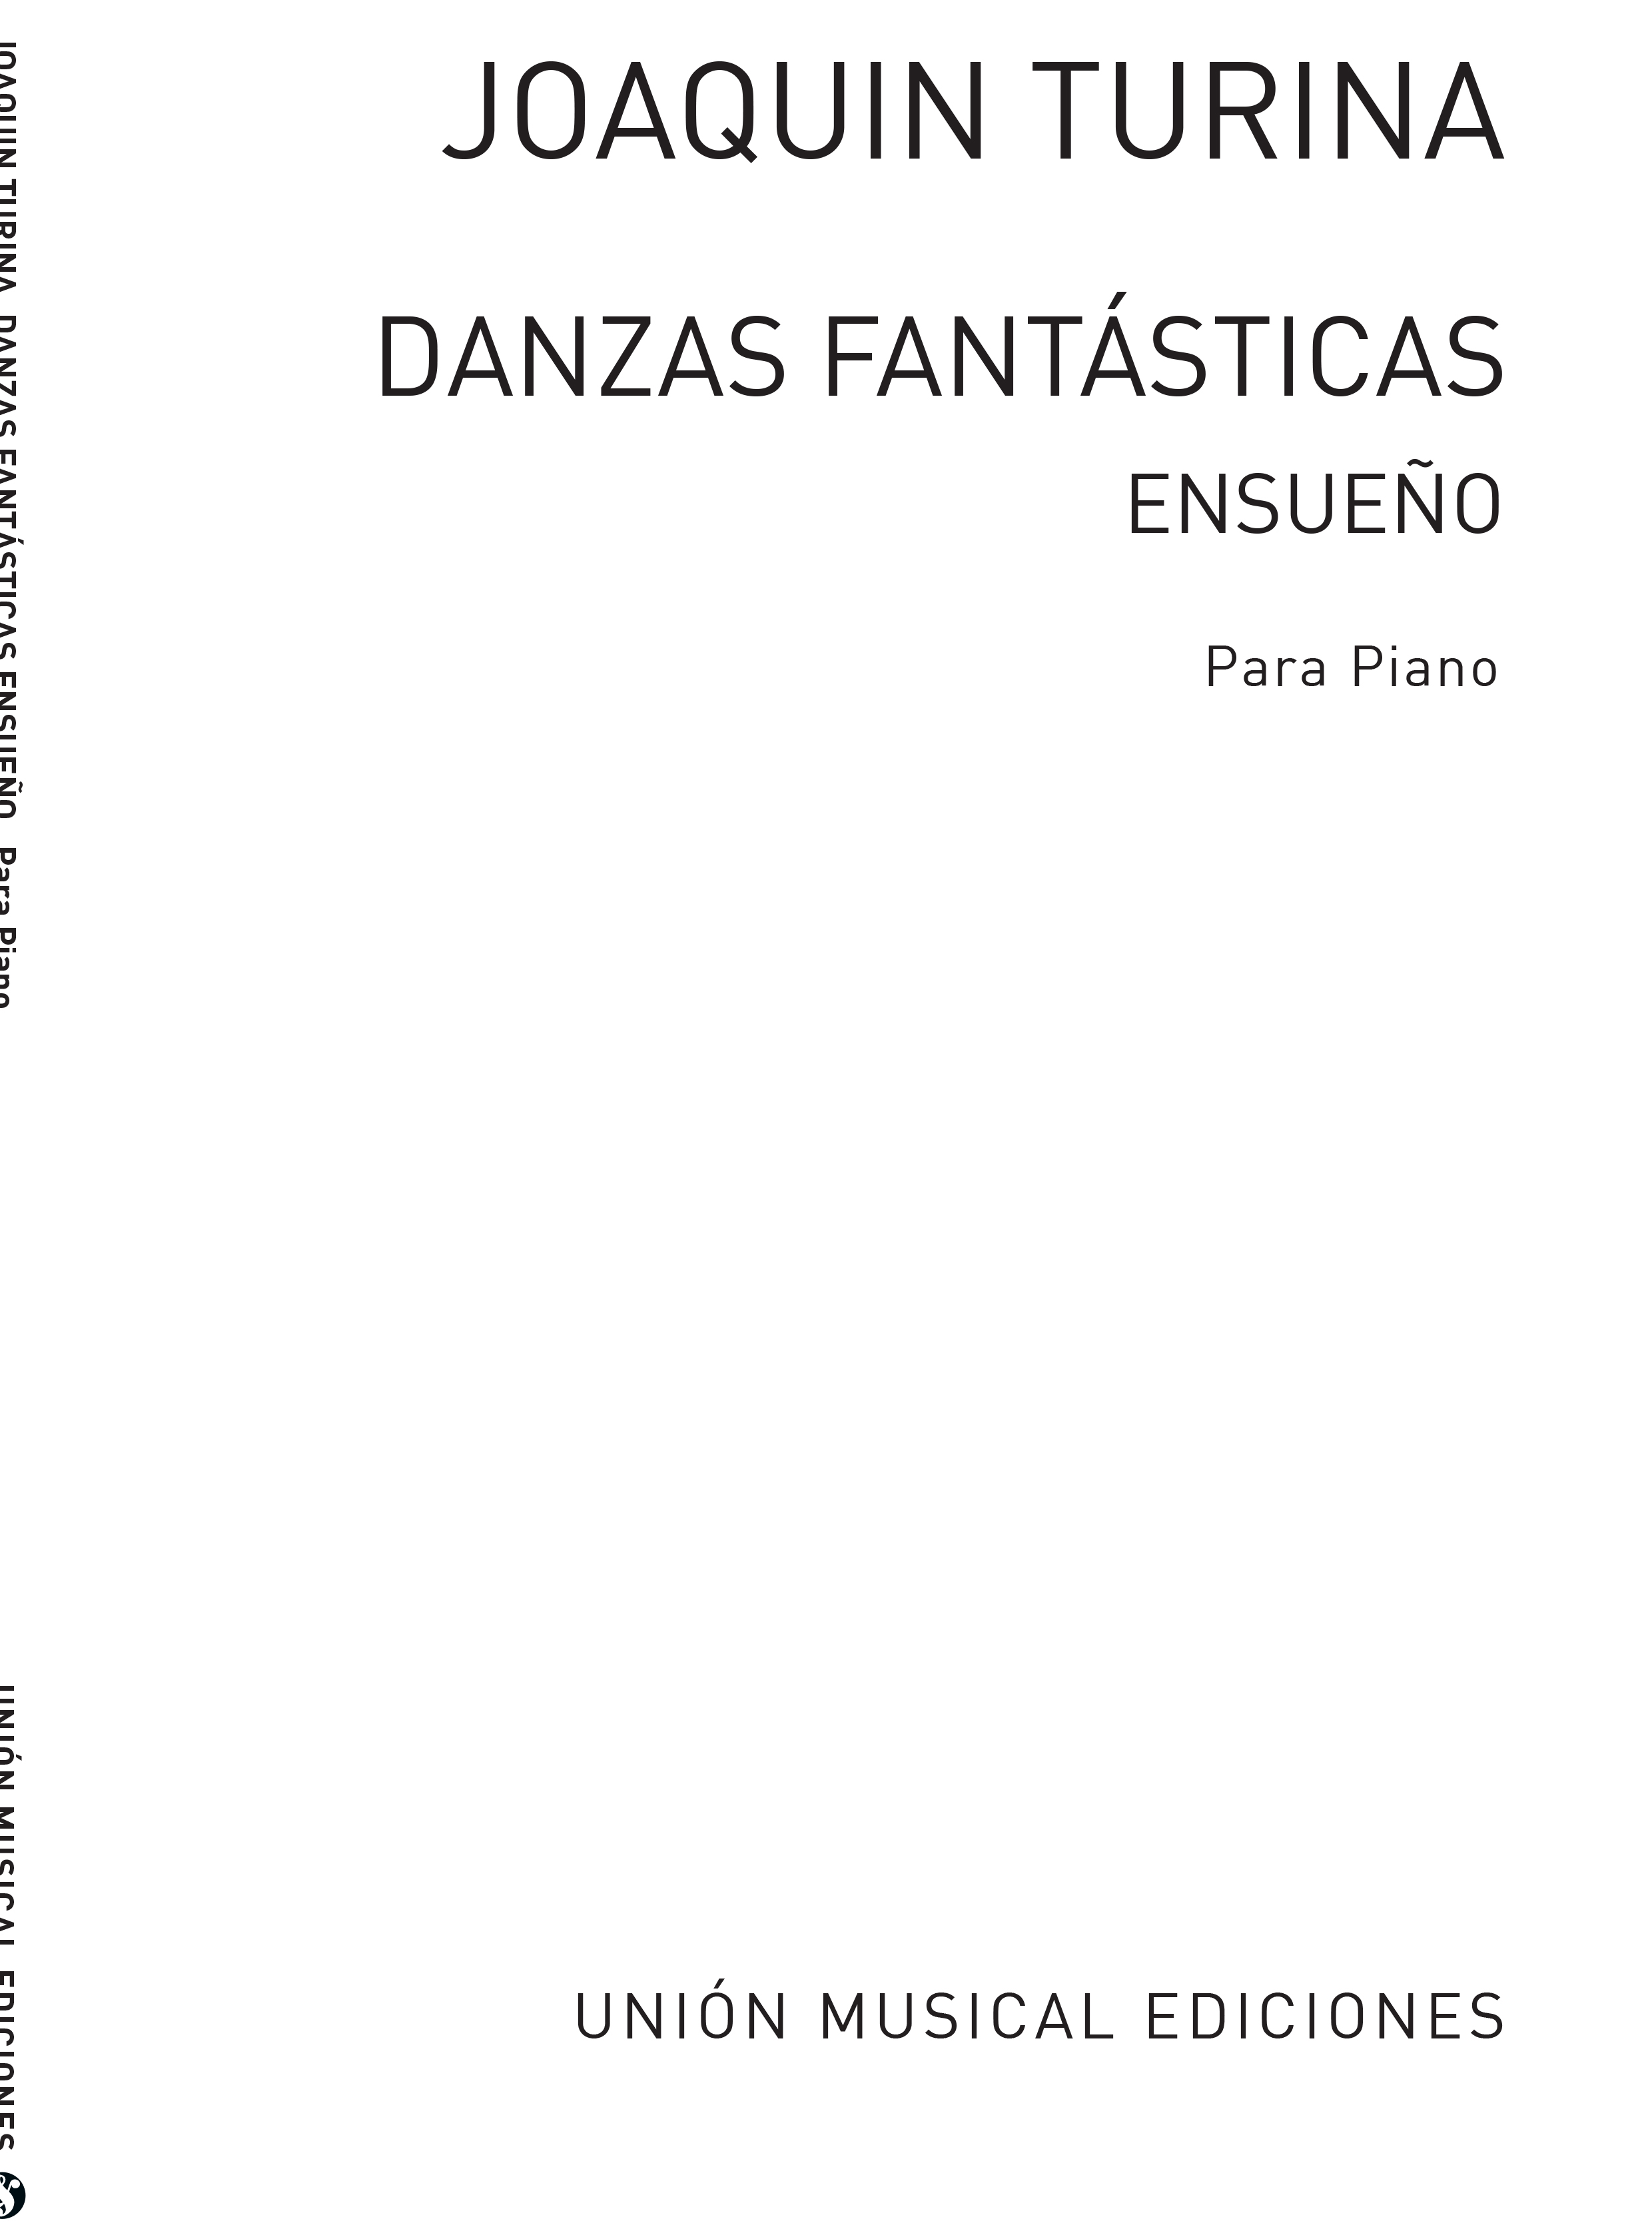 Joaquín Turina: Ensueno'  Danzas Fantasticas: Piano: Instrumental Album